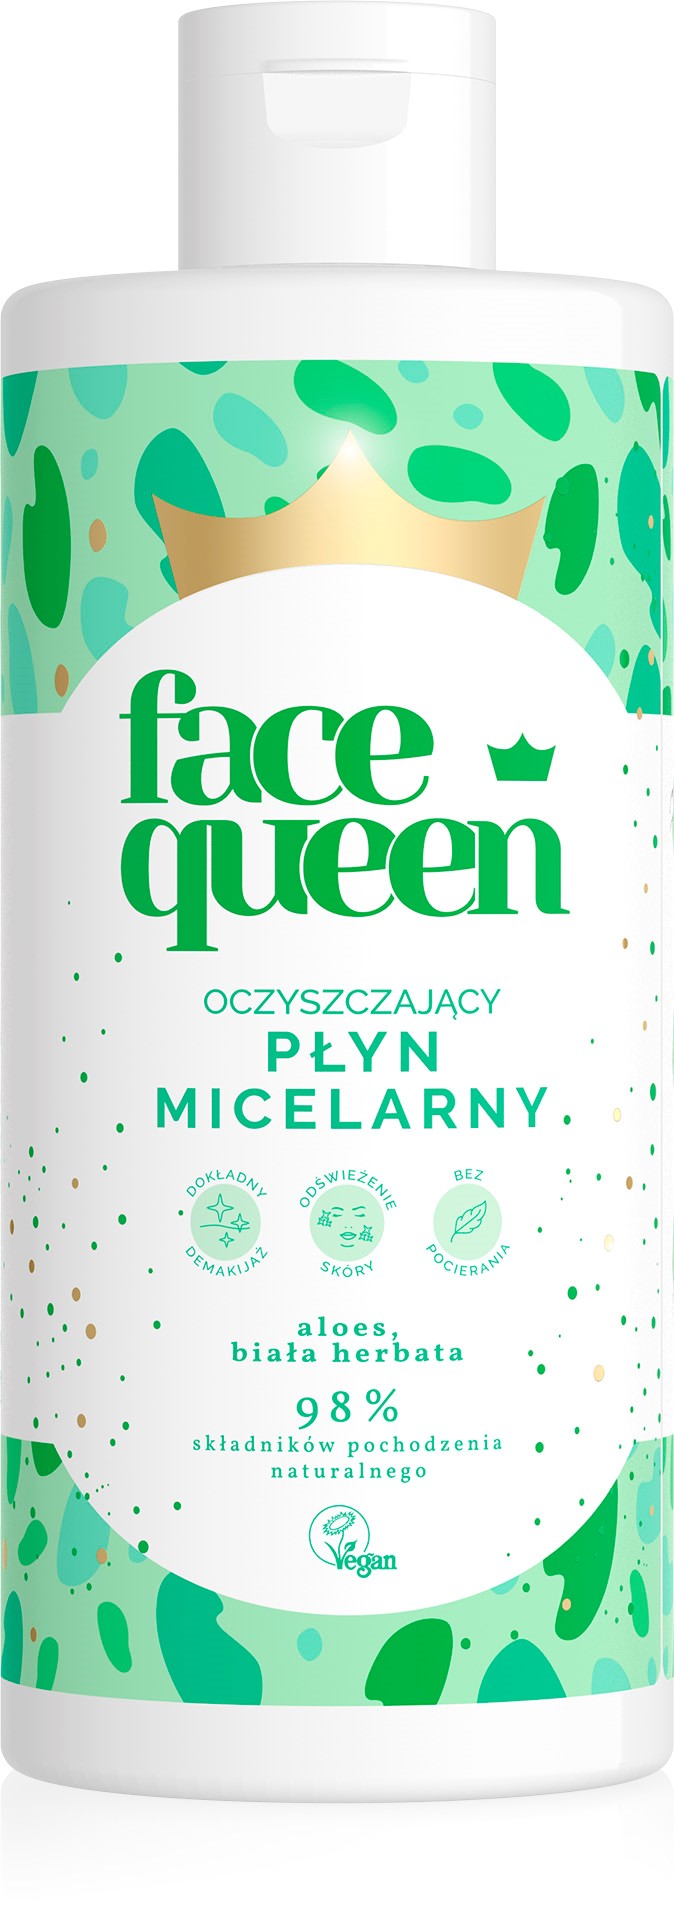 Face Queen Oczyszczający płyn micelarny